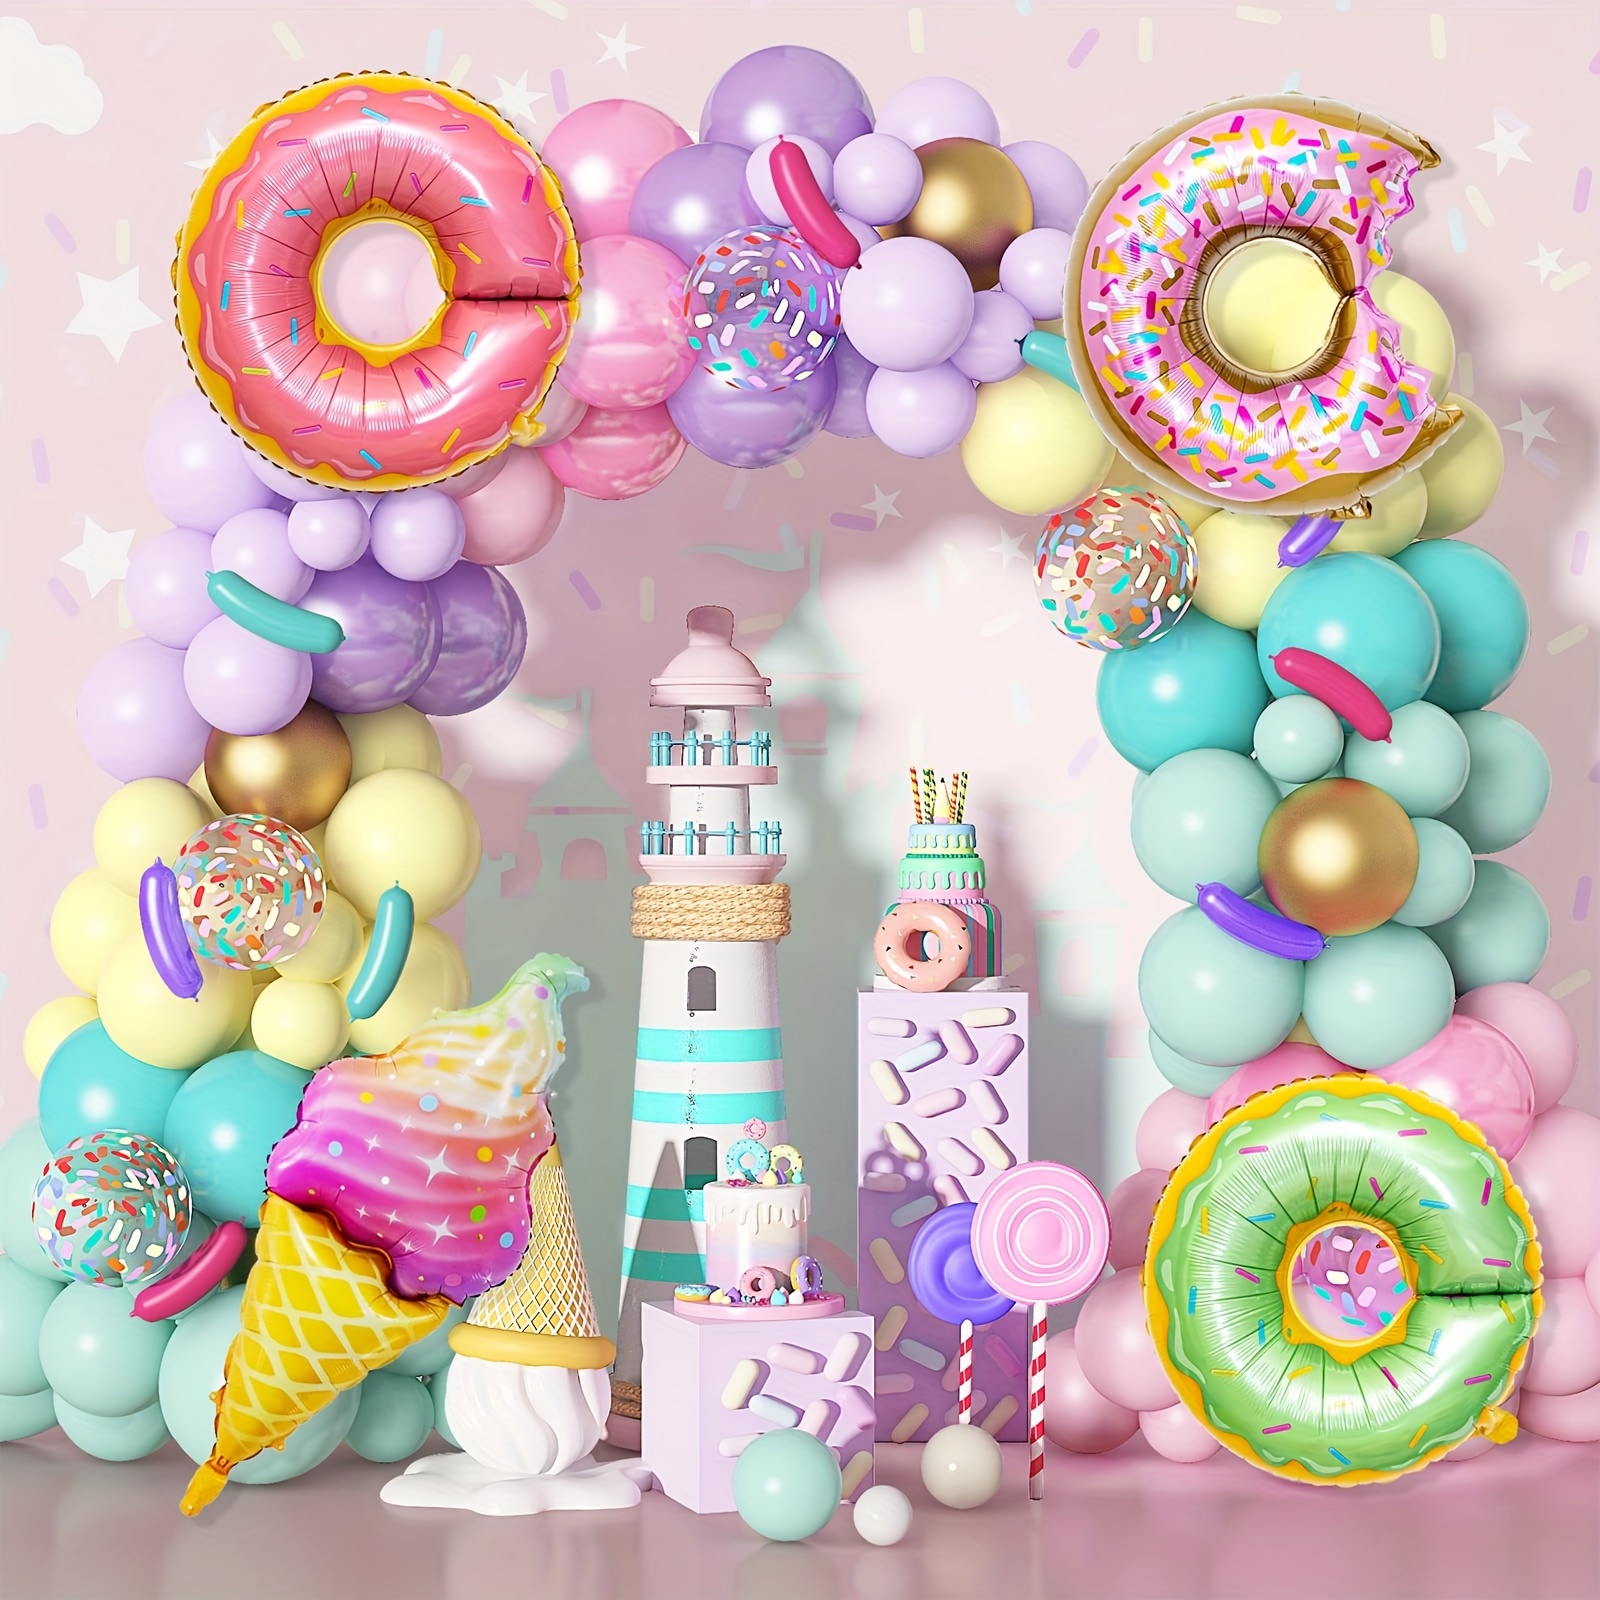  Kit de decoración de fiesta de cumpleaños con temática de  princesa rosa y dorada, decoración de fiesta de primer cumpleaños, sombrero  de niña, decoración para tarta, globos de 1 año, pancarta